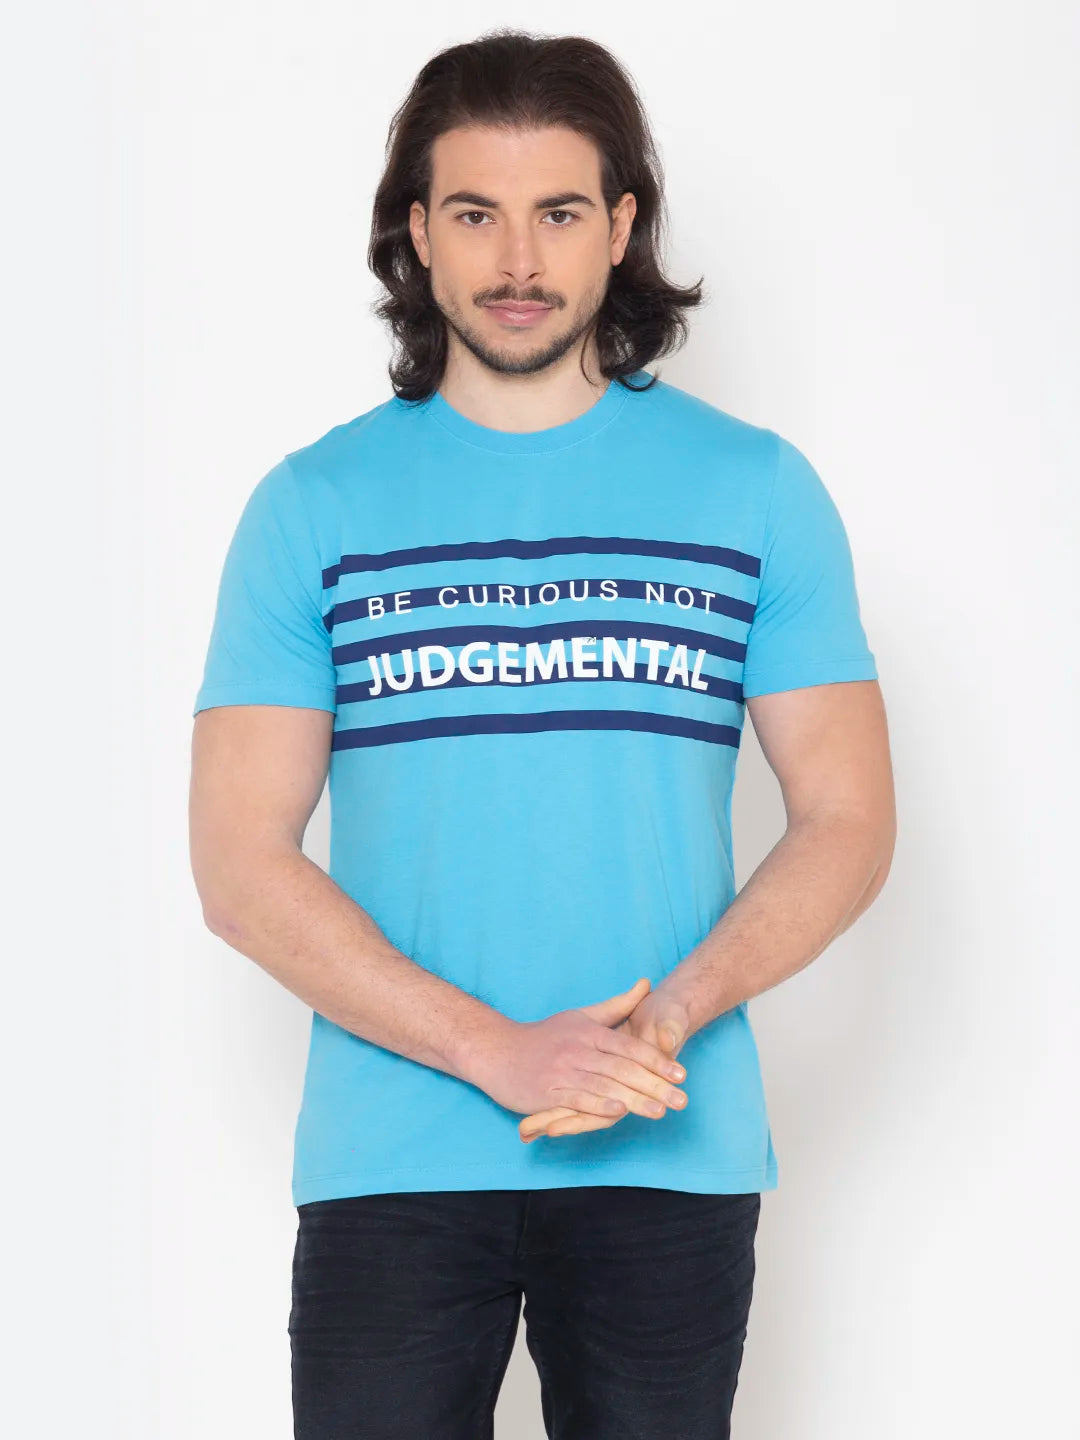 Judgemental T-Shirt Trump